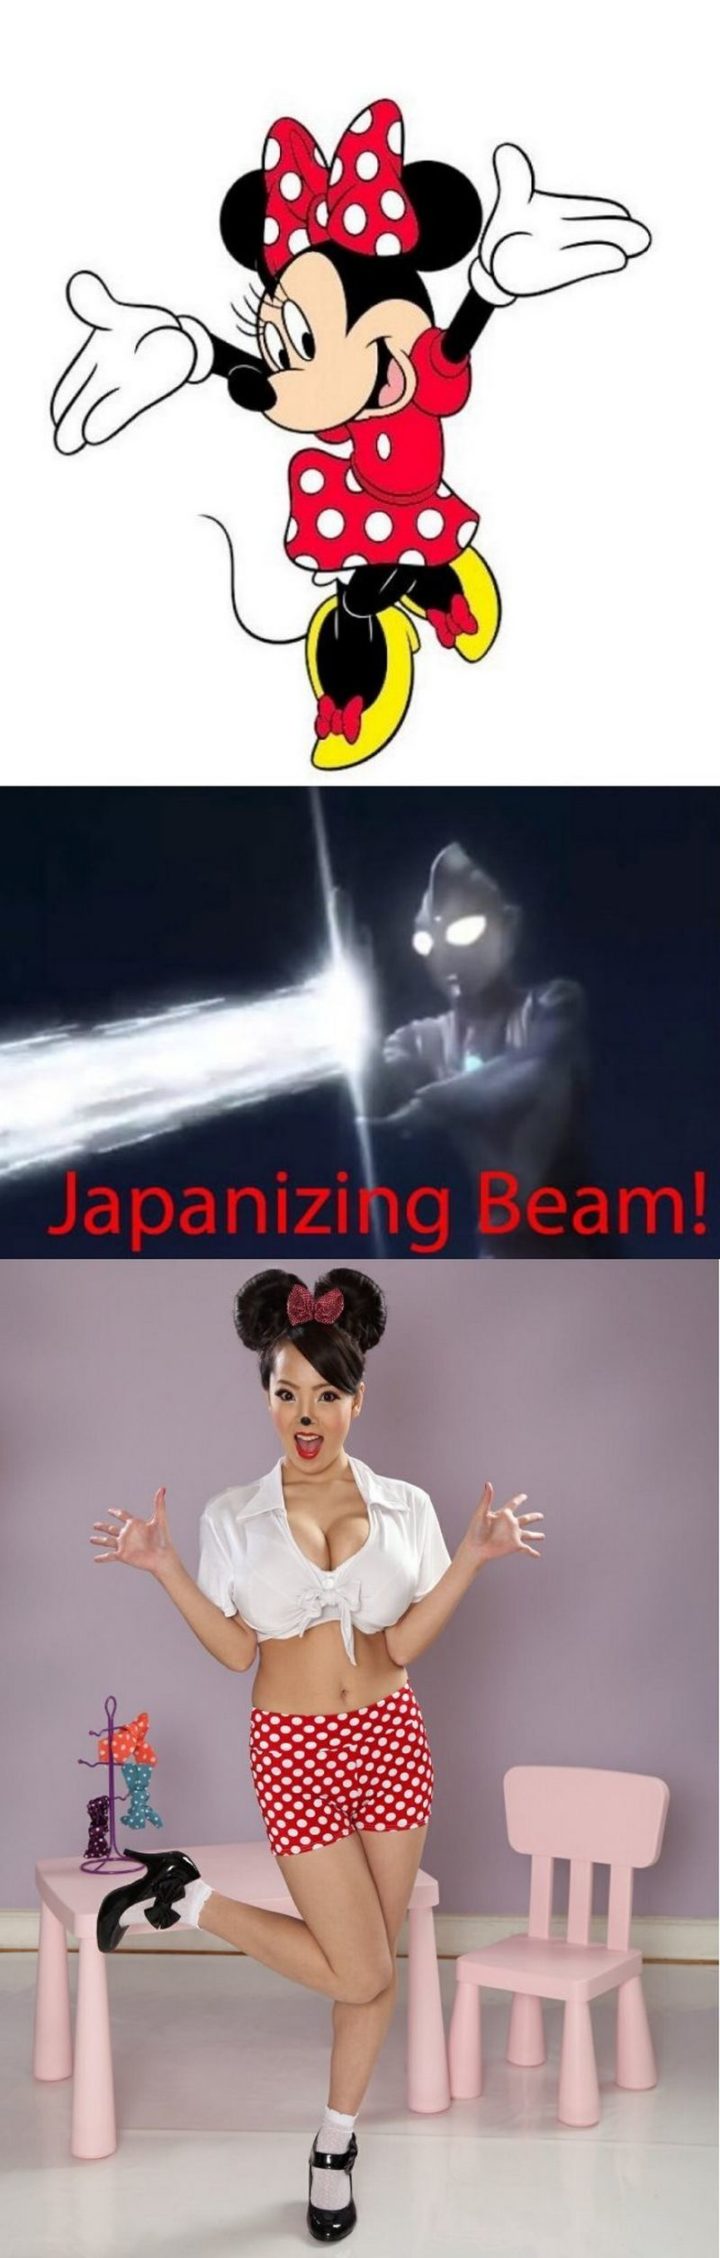 "Japanizing beam!"